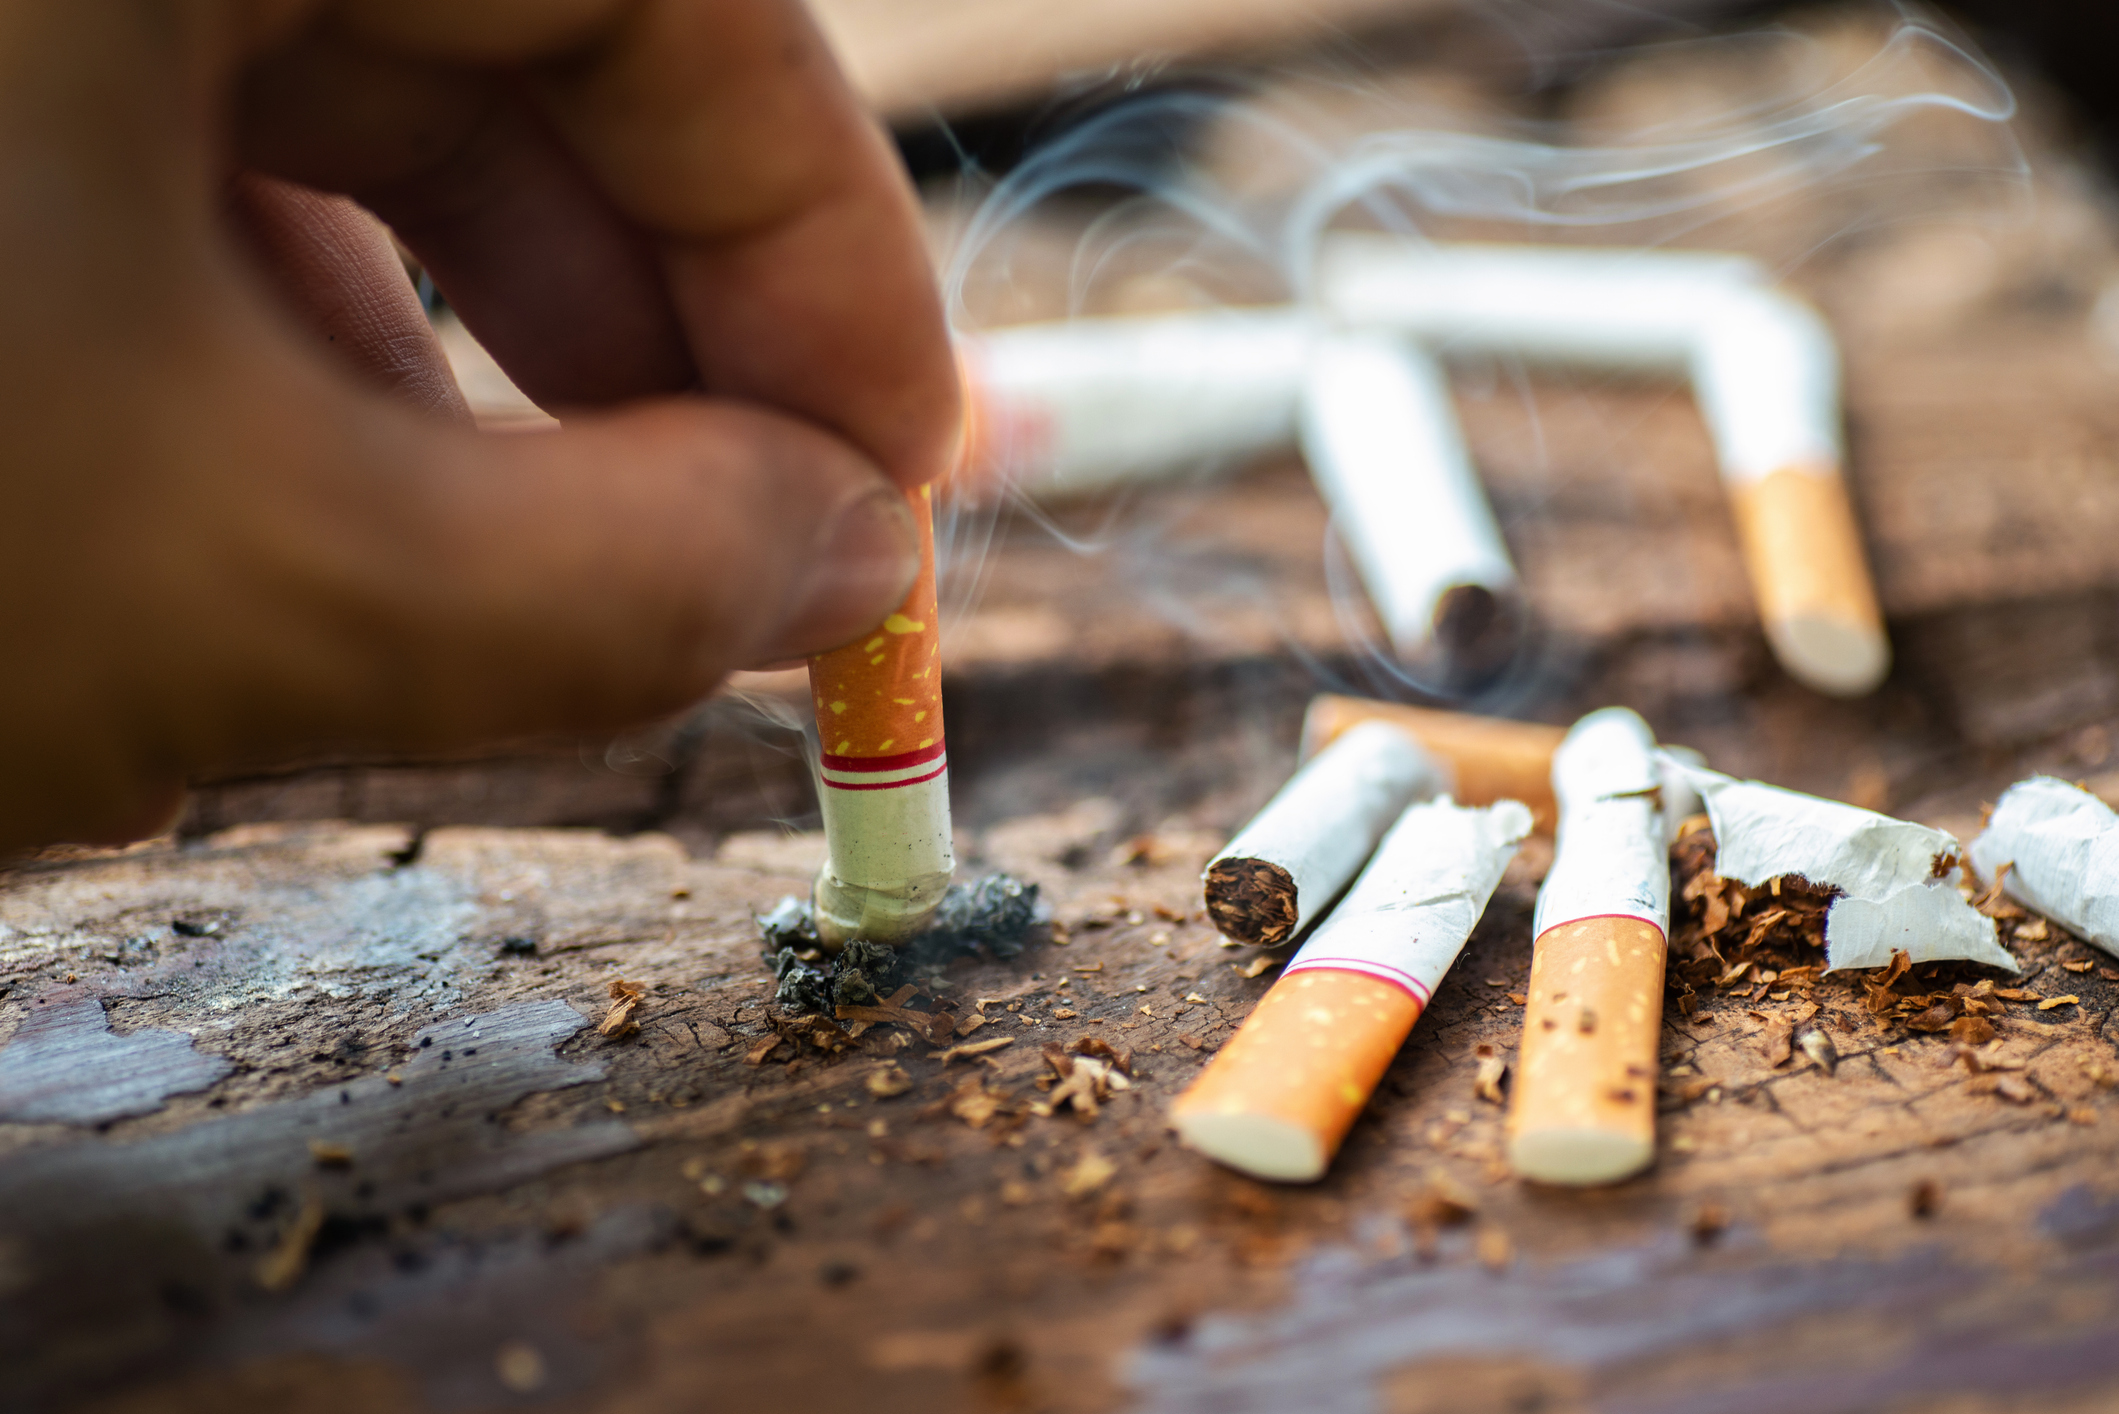 Noua Zeelandă va impune interdicție pe viață la achiziția de țigări pentru cei sub 14 ani